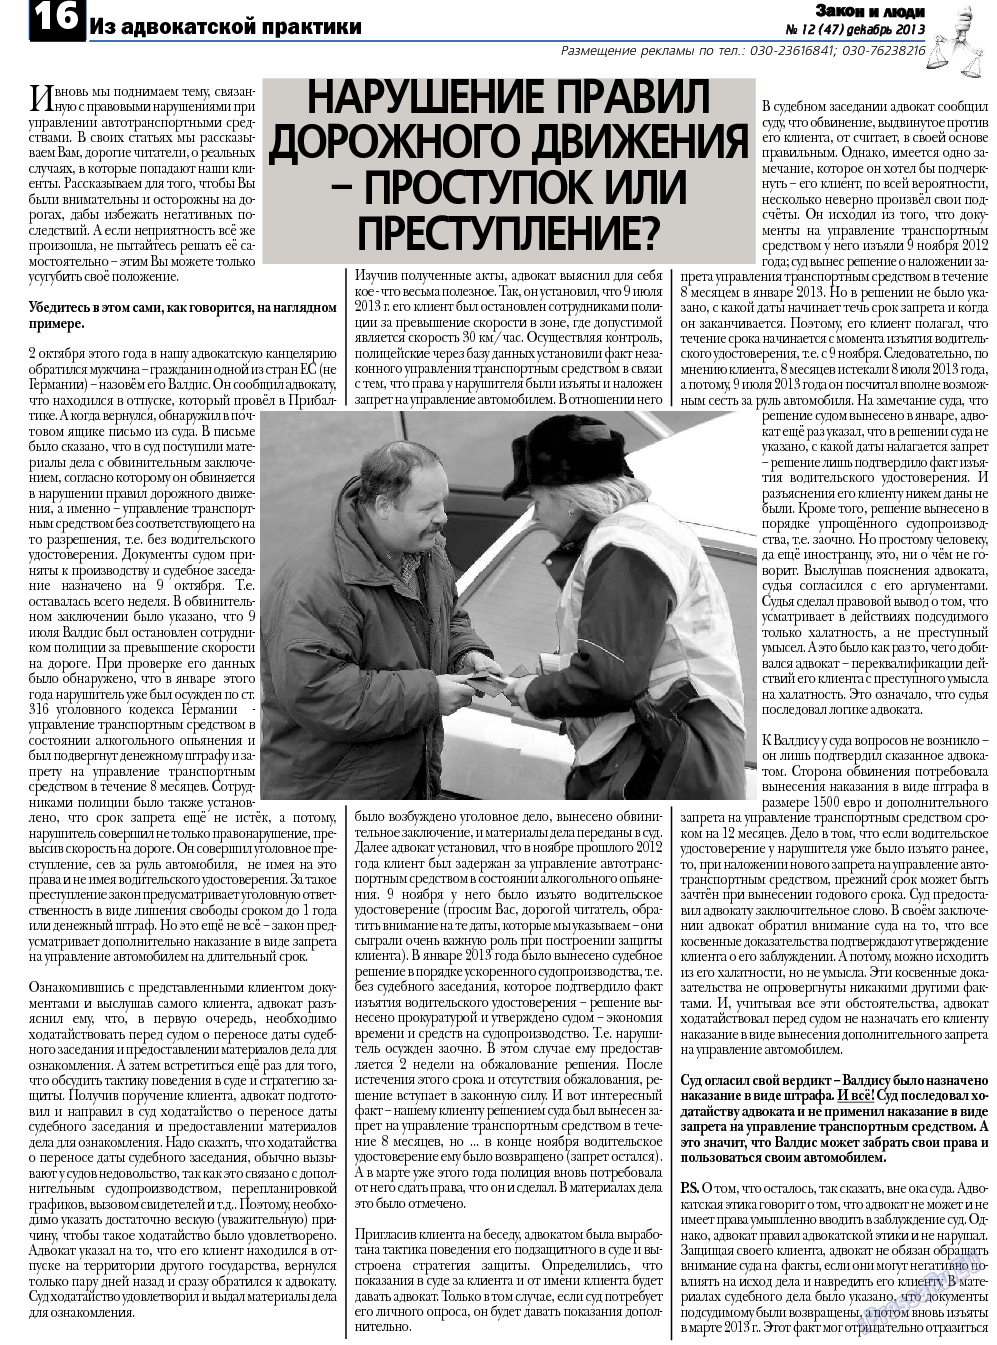 Закон и люди, газета. 2013 №12 стр.16